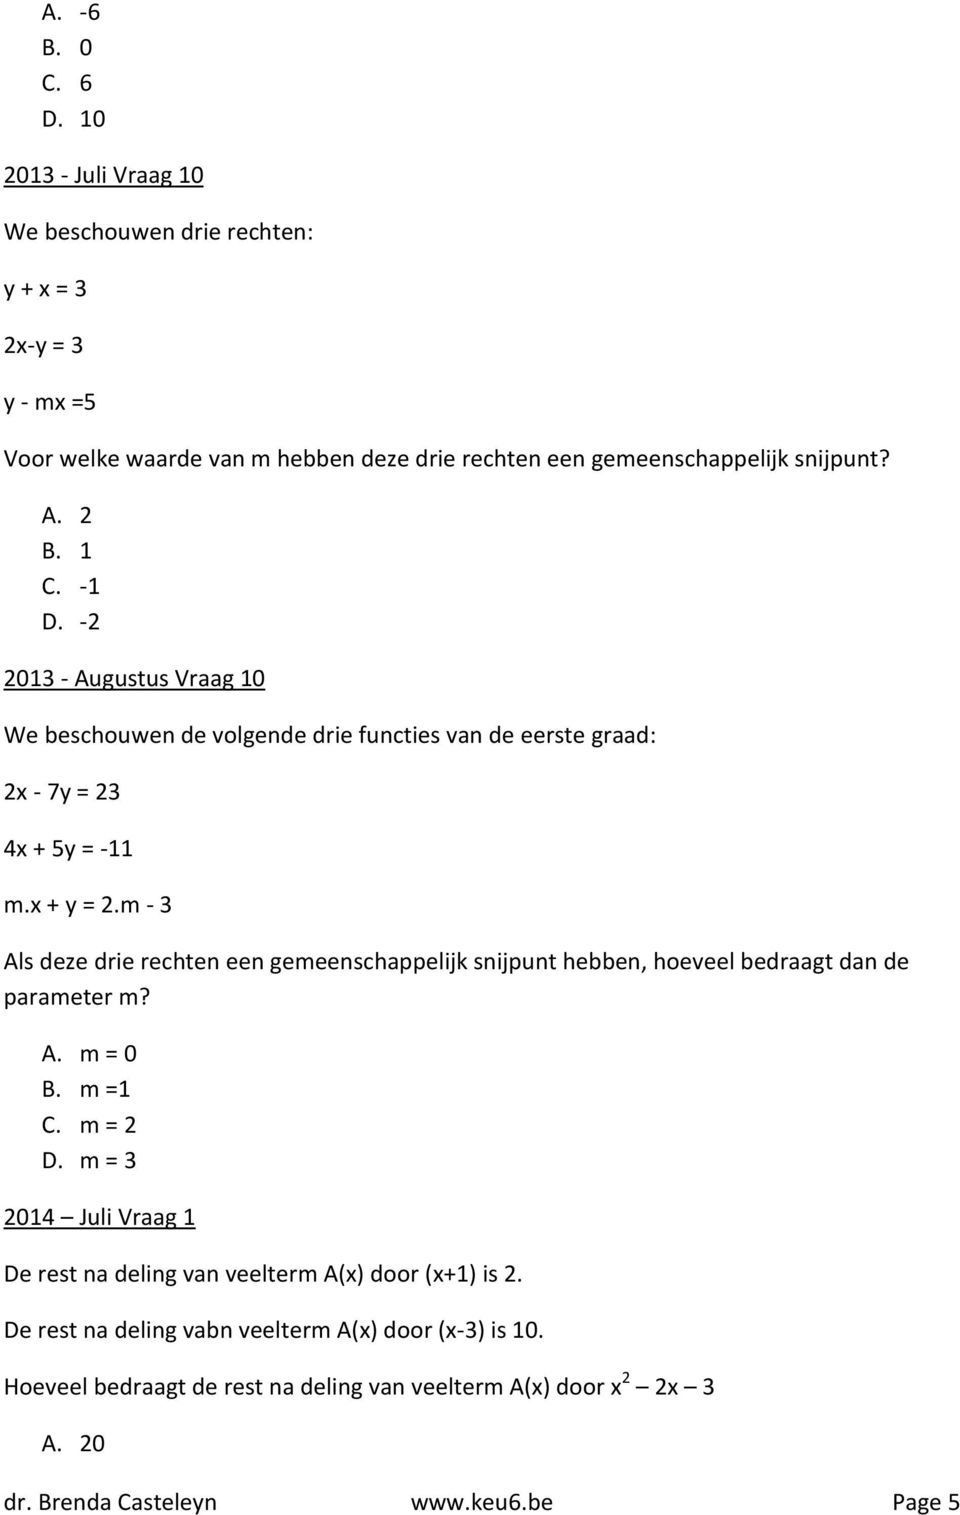 -1 D. -2 2013 - Augustus Vraag 10 We beschouwen de volgende drie functies van de eerste graad: 2x - 7y = 23 4x + 5y = -11 m.x + y = 2.